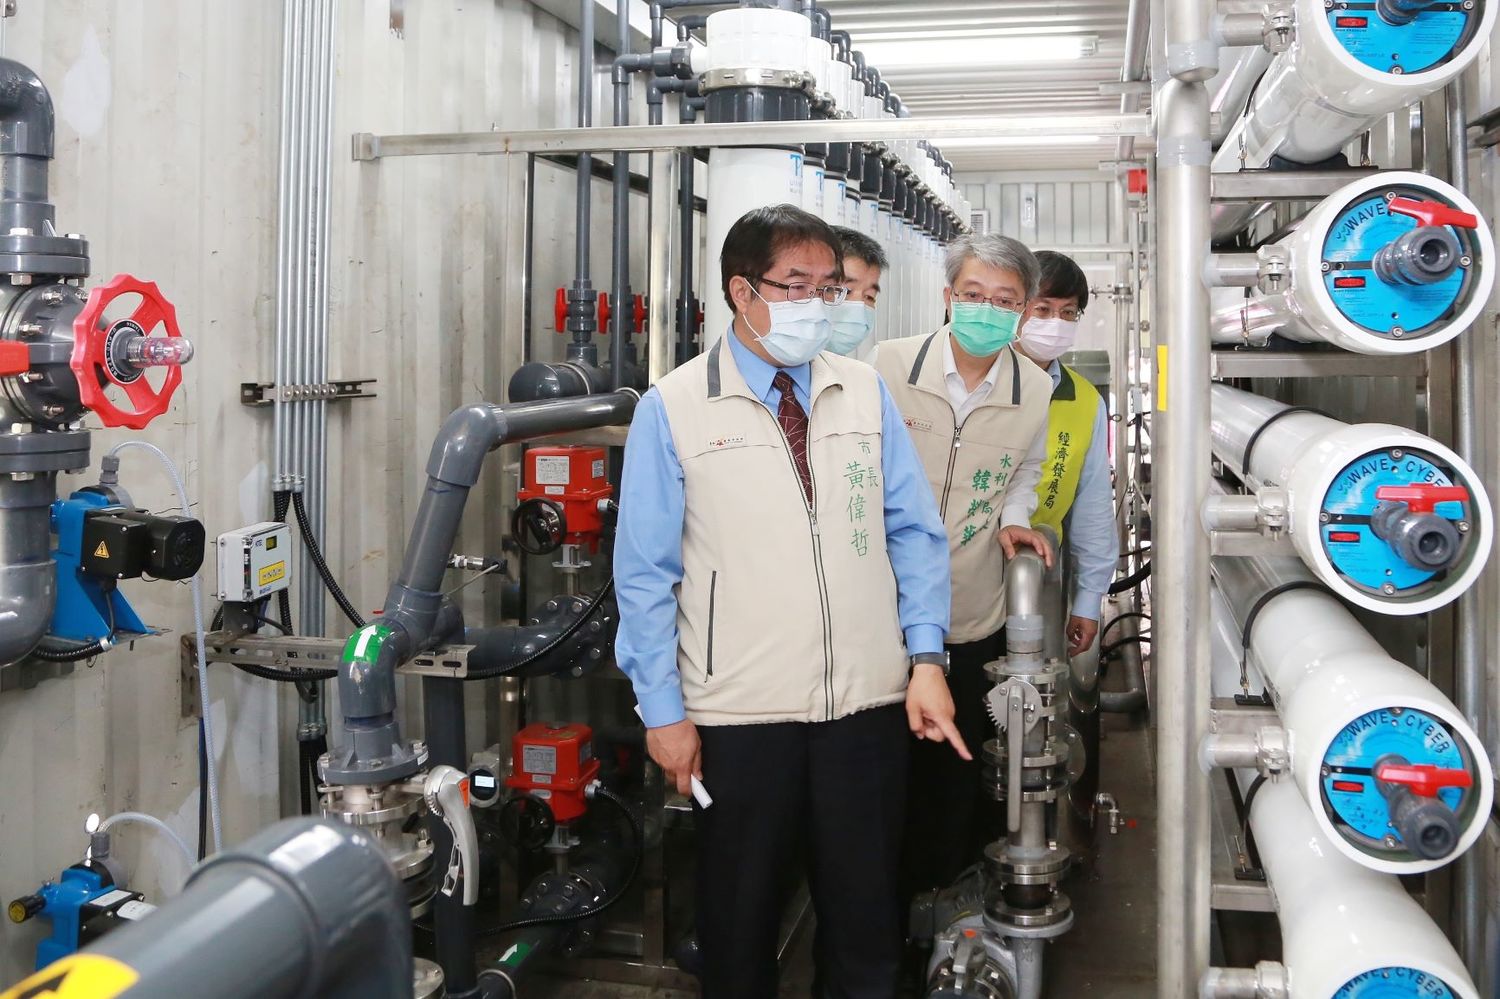 首座大型移動式RO淨水設備啟用 黃偉哲力促產業及民生供水穩定